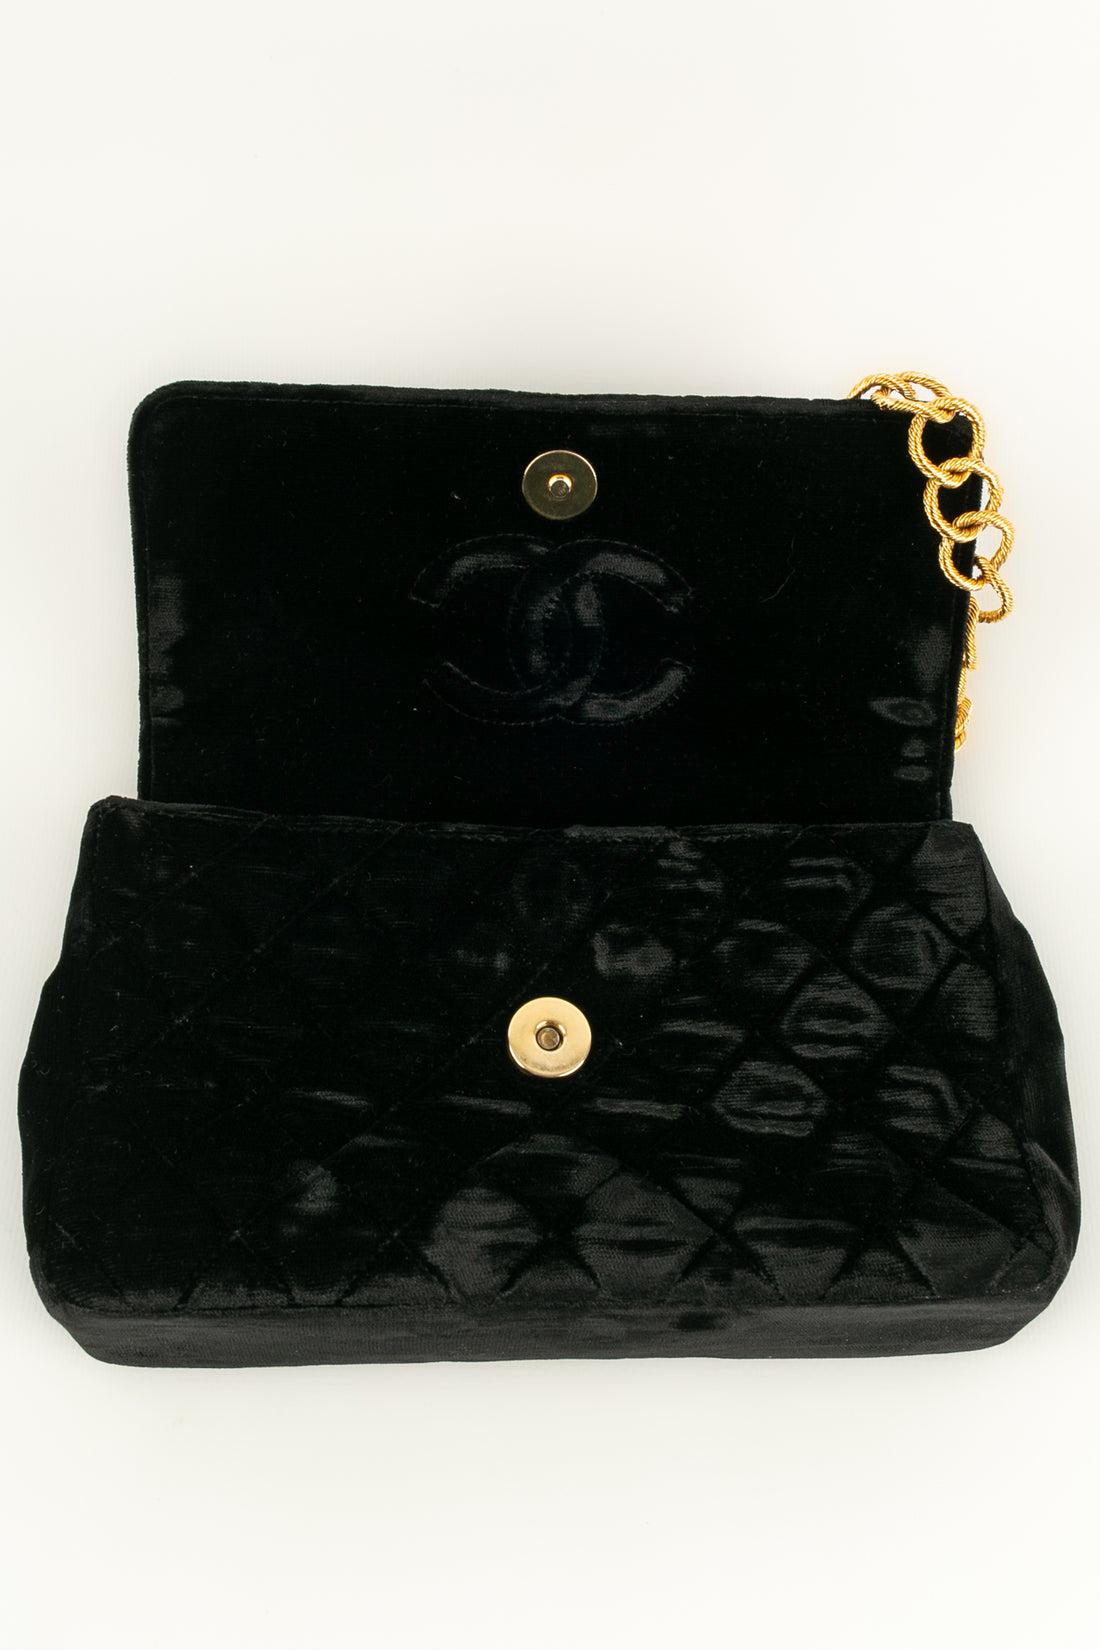 Chanel Jewel Bag in Black Velvet, 1989 / 1991 For Sale 2